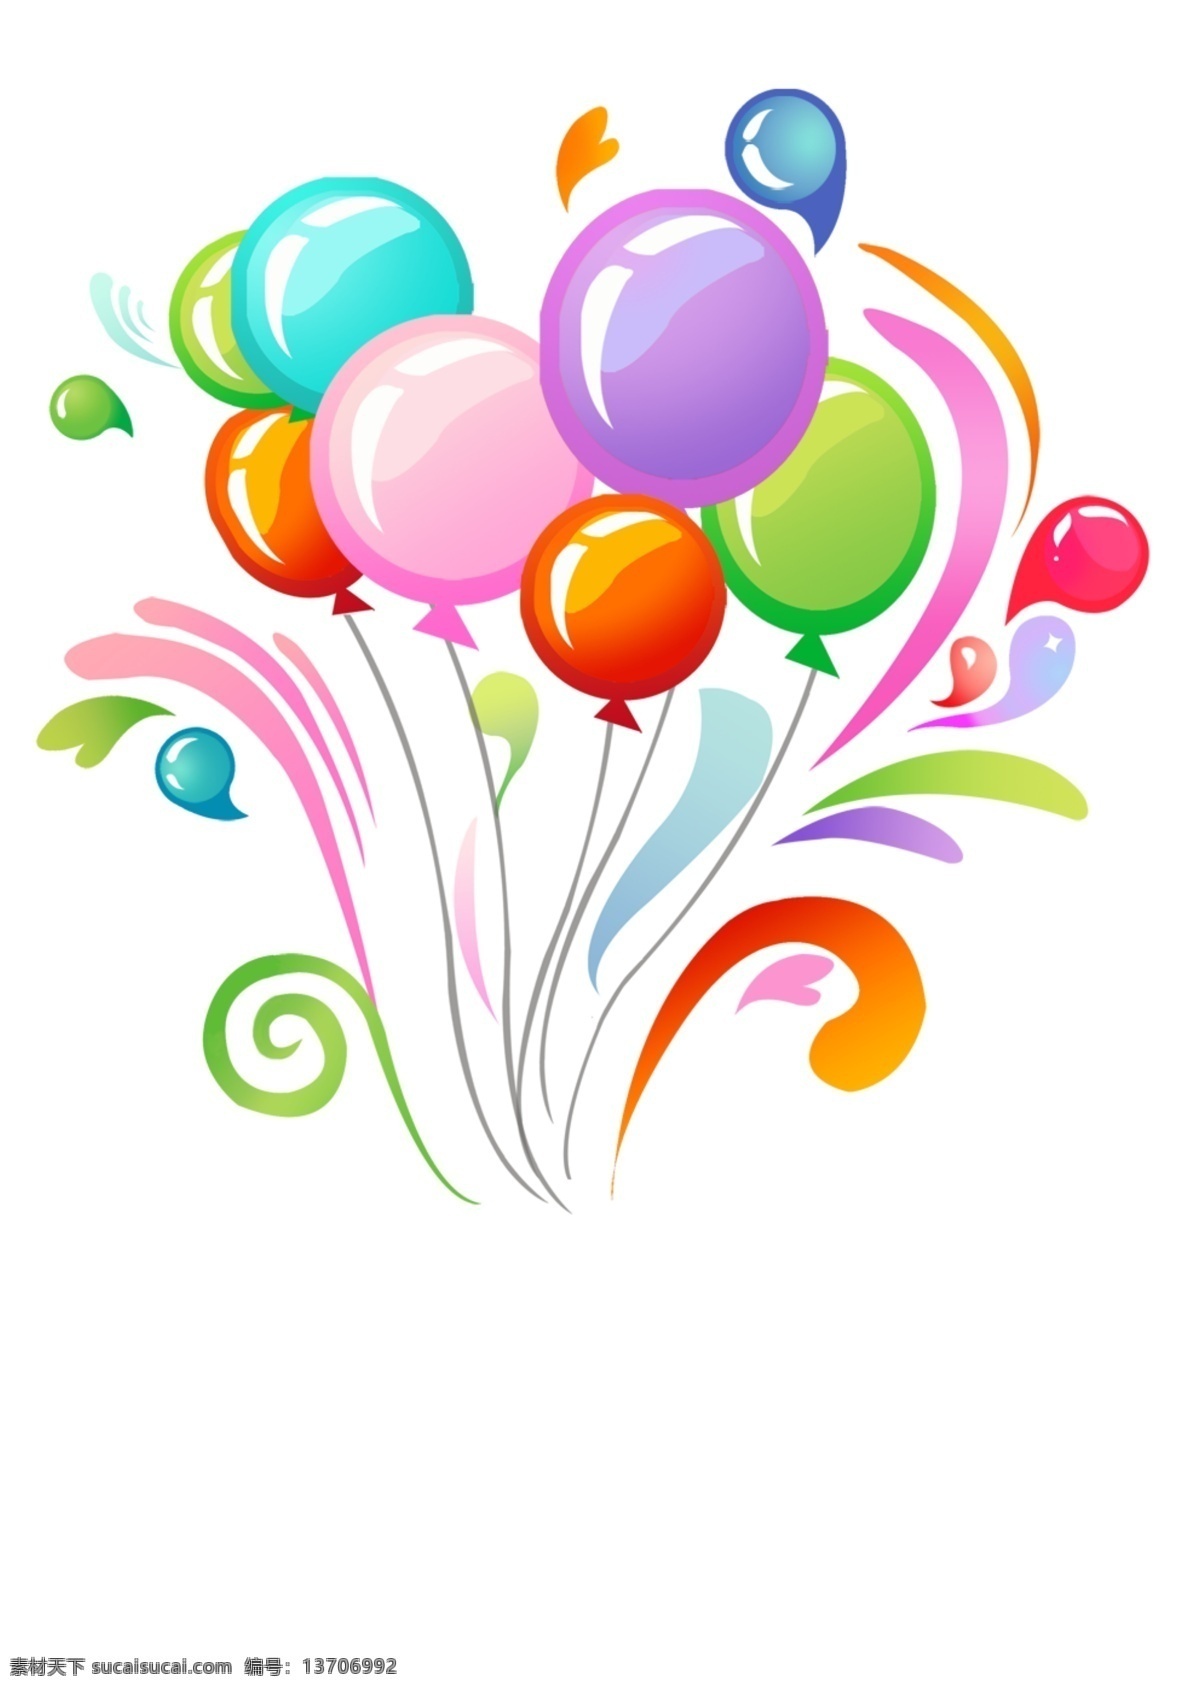 彩色气球 彩色气球装饰 彩色 气球 格式 气球装饰品 五颜六色 分层 源文件